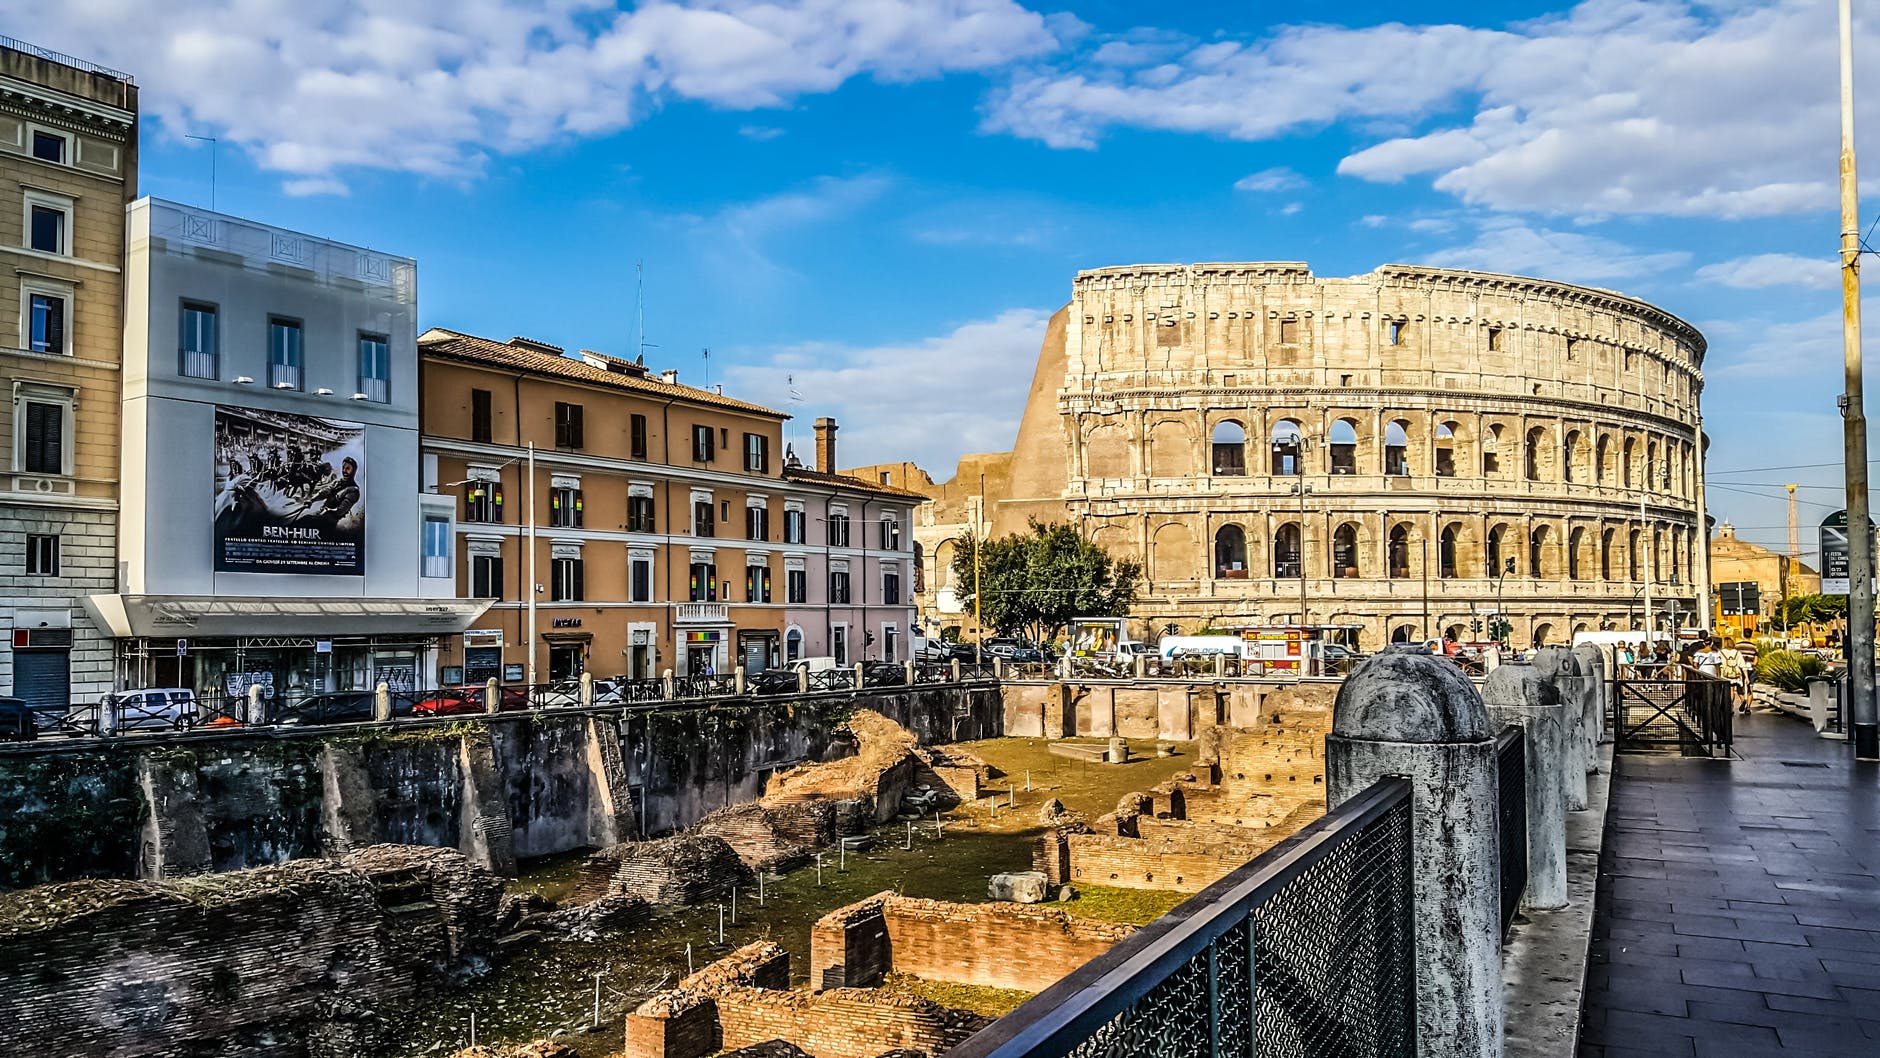 Rom, eine Stadt voller Geschichte und Kultur, ist ein Muss für jeden, der sich für Kunst, Architektur oder einfach nur für die Erkundung einer der schönsten Städte der Welt interessiert. ancient architecture arena buildings